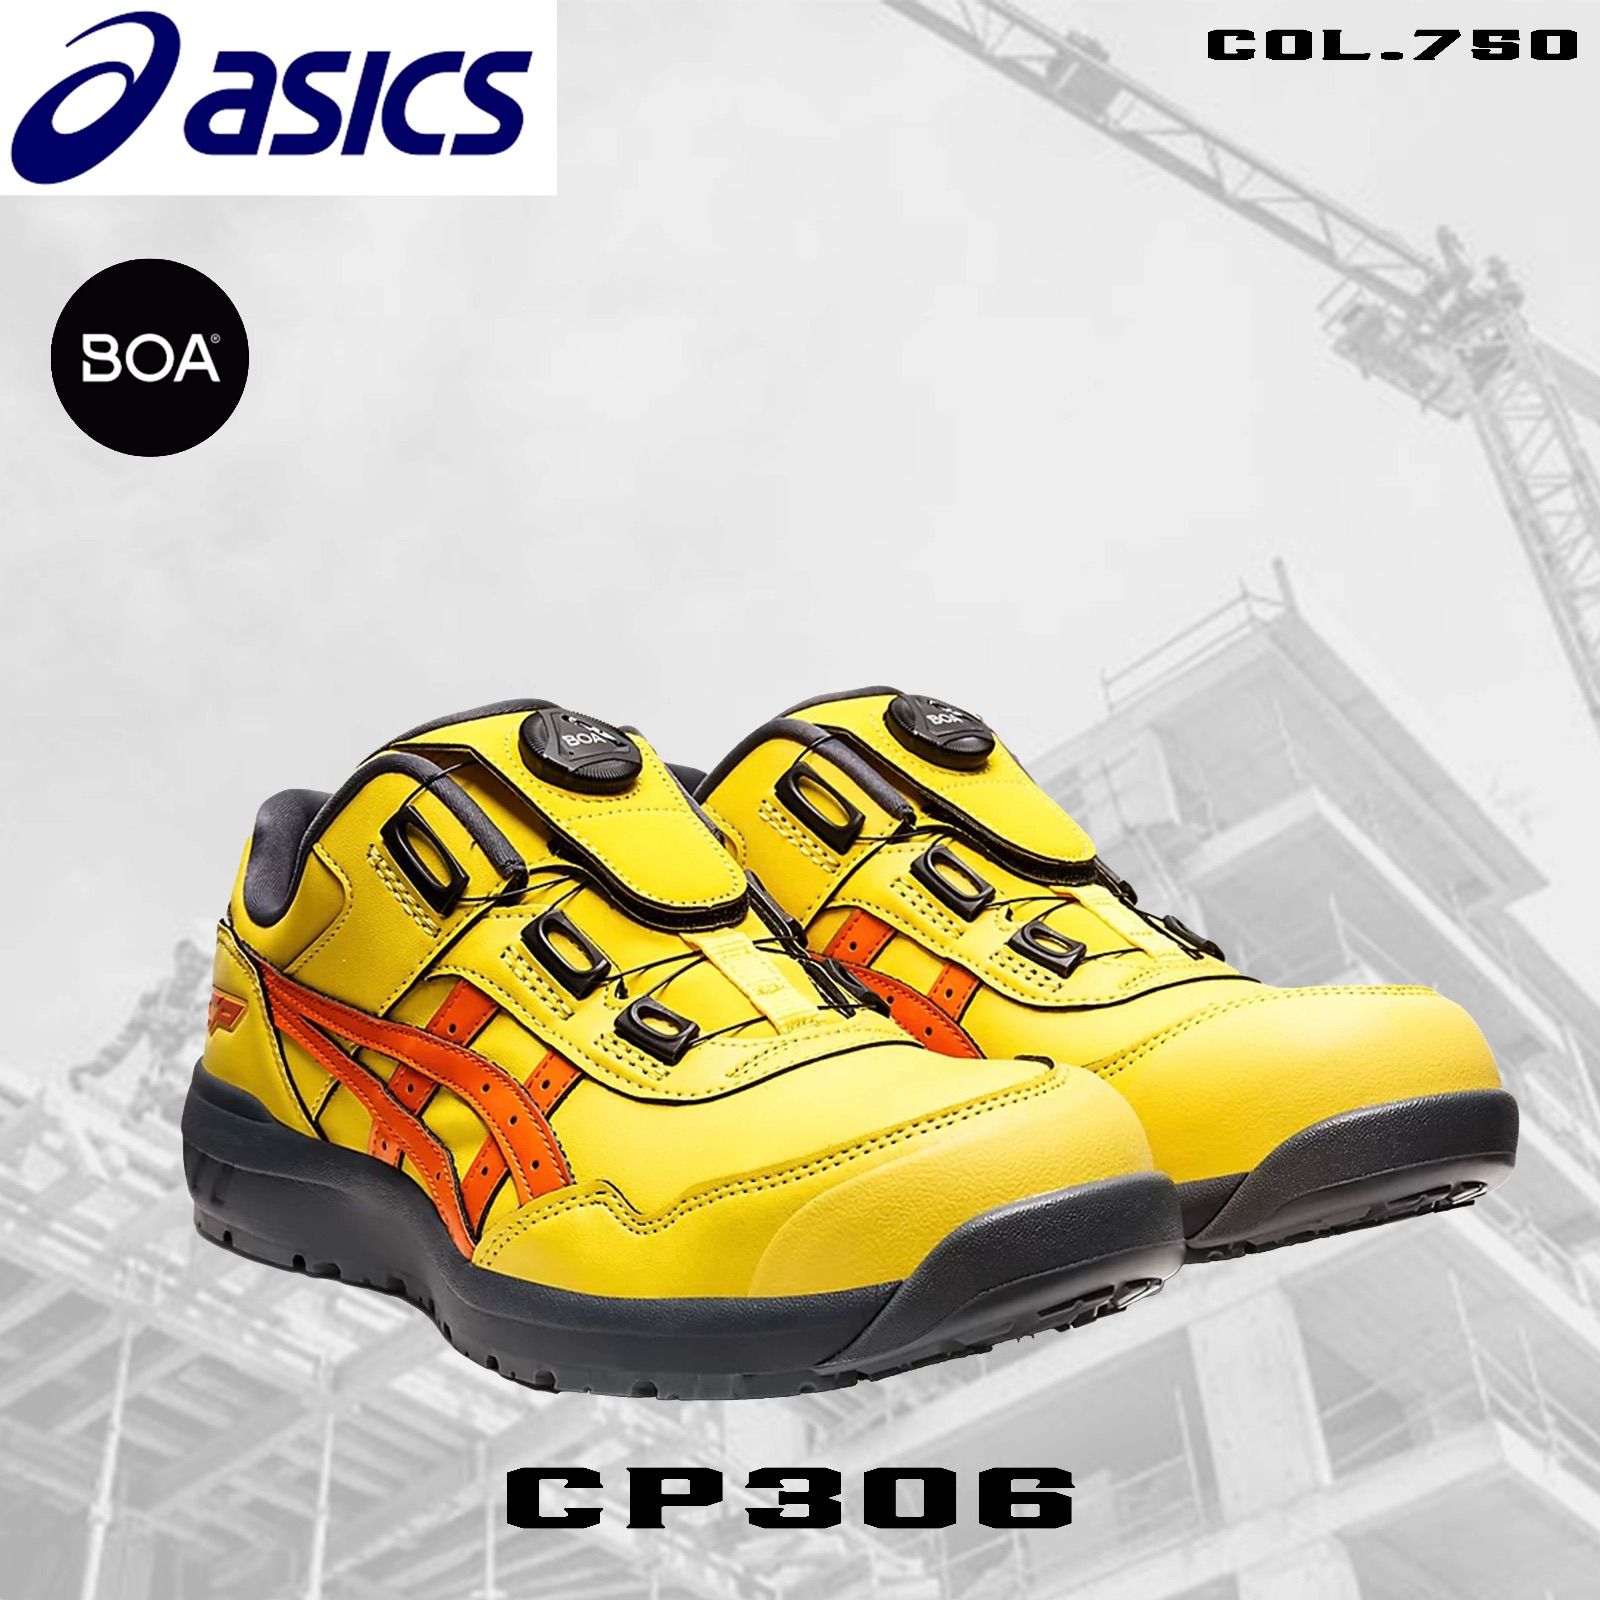 アシックス安全靴 CP306 BOA ヴァリアントイエロー×ハバネロ